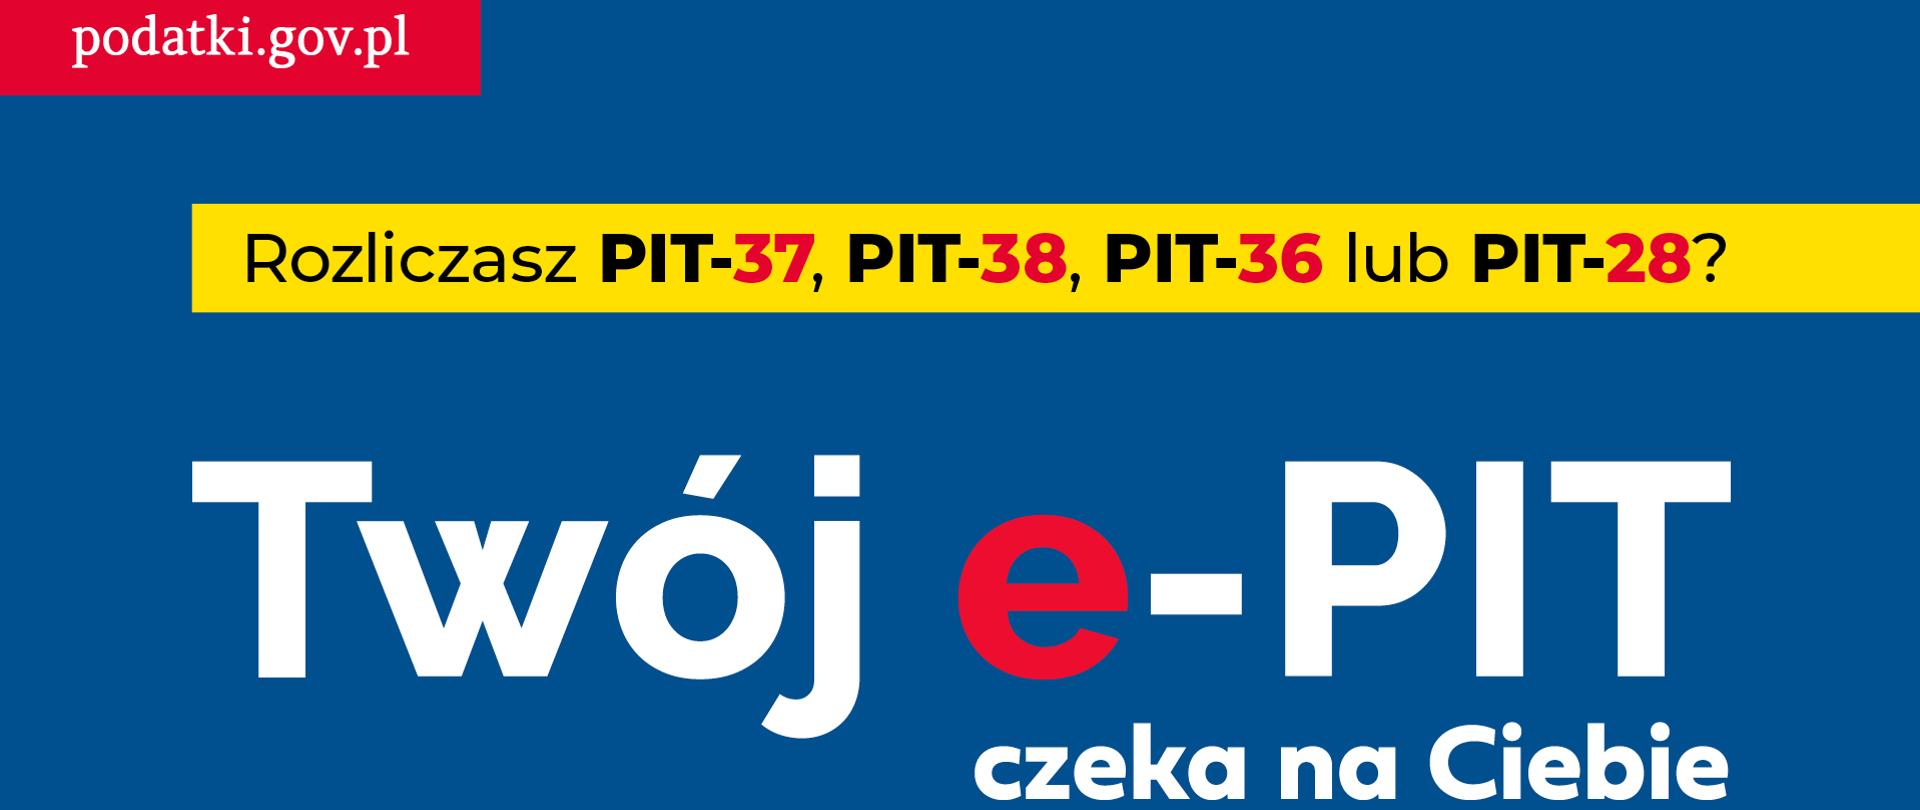 Logo akcji Twoj_e-PIT_2020